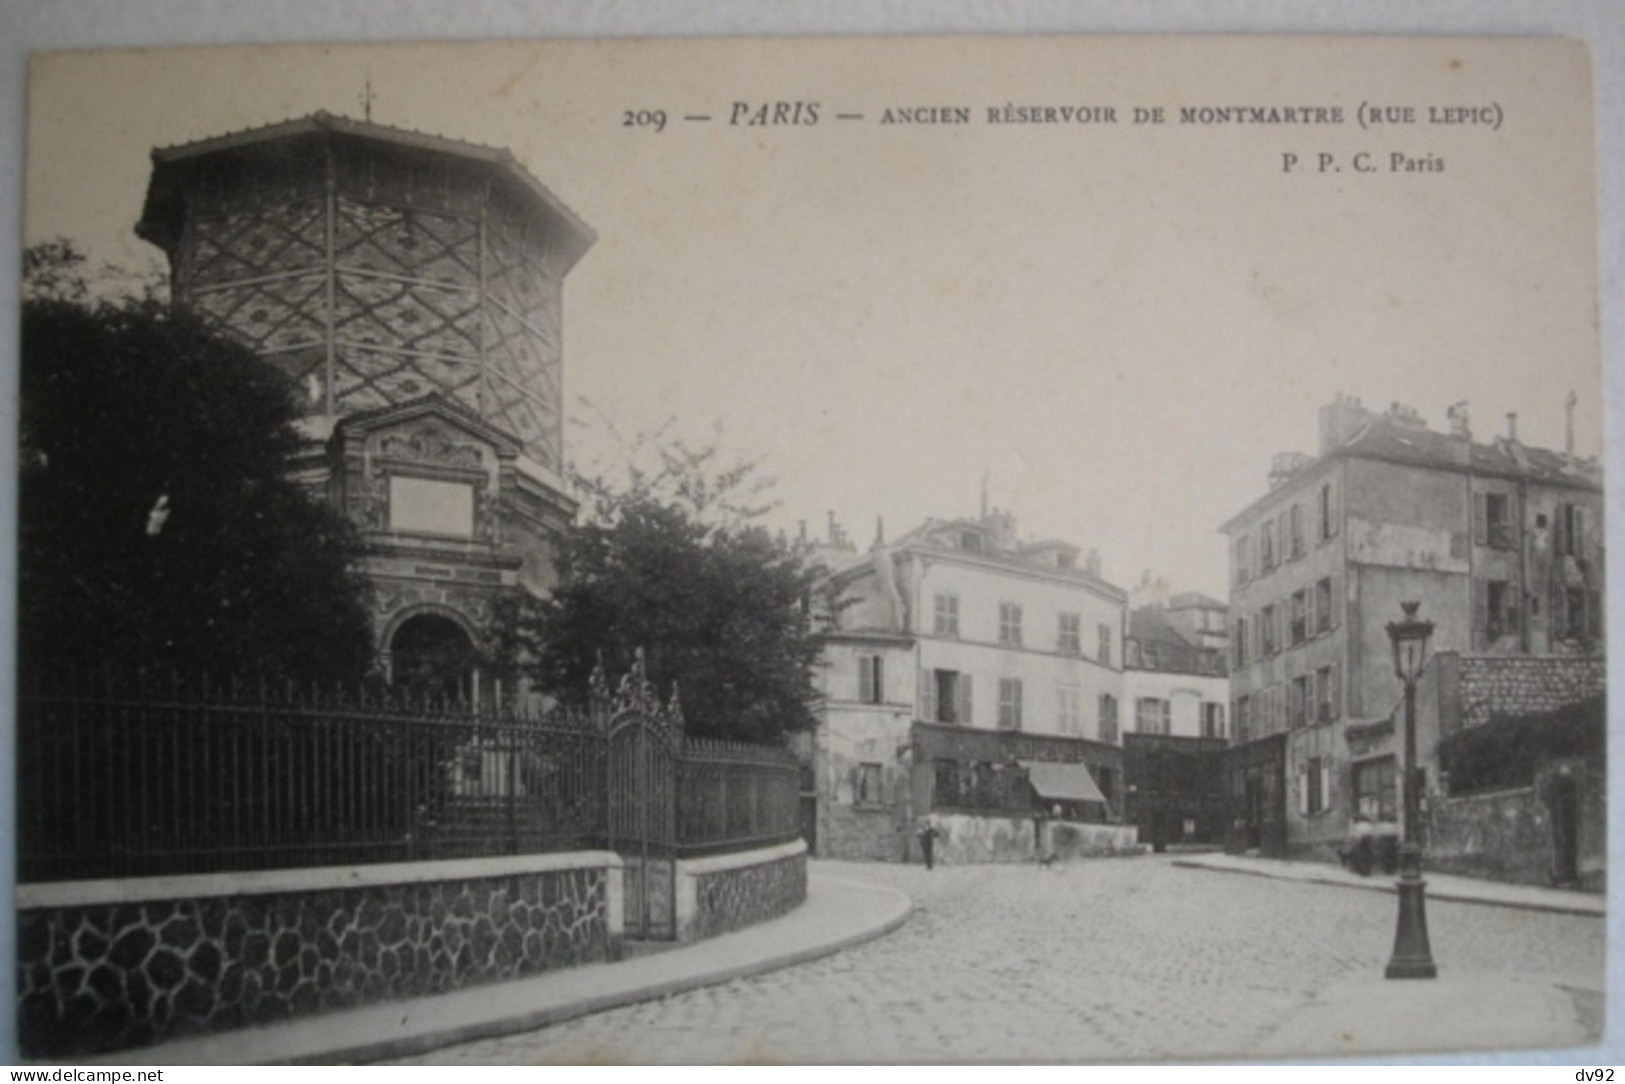 PARIS RUE LEPIC ANCIEN RESERVOIR - Paris (18)